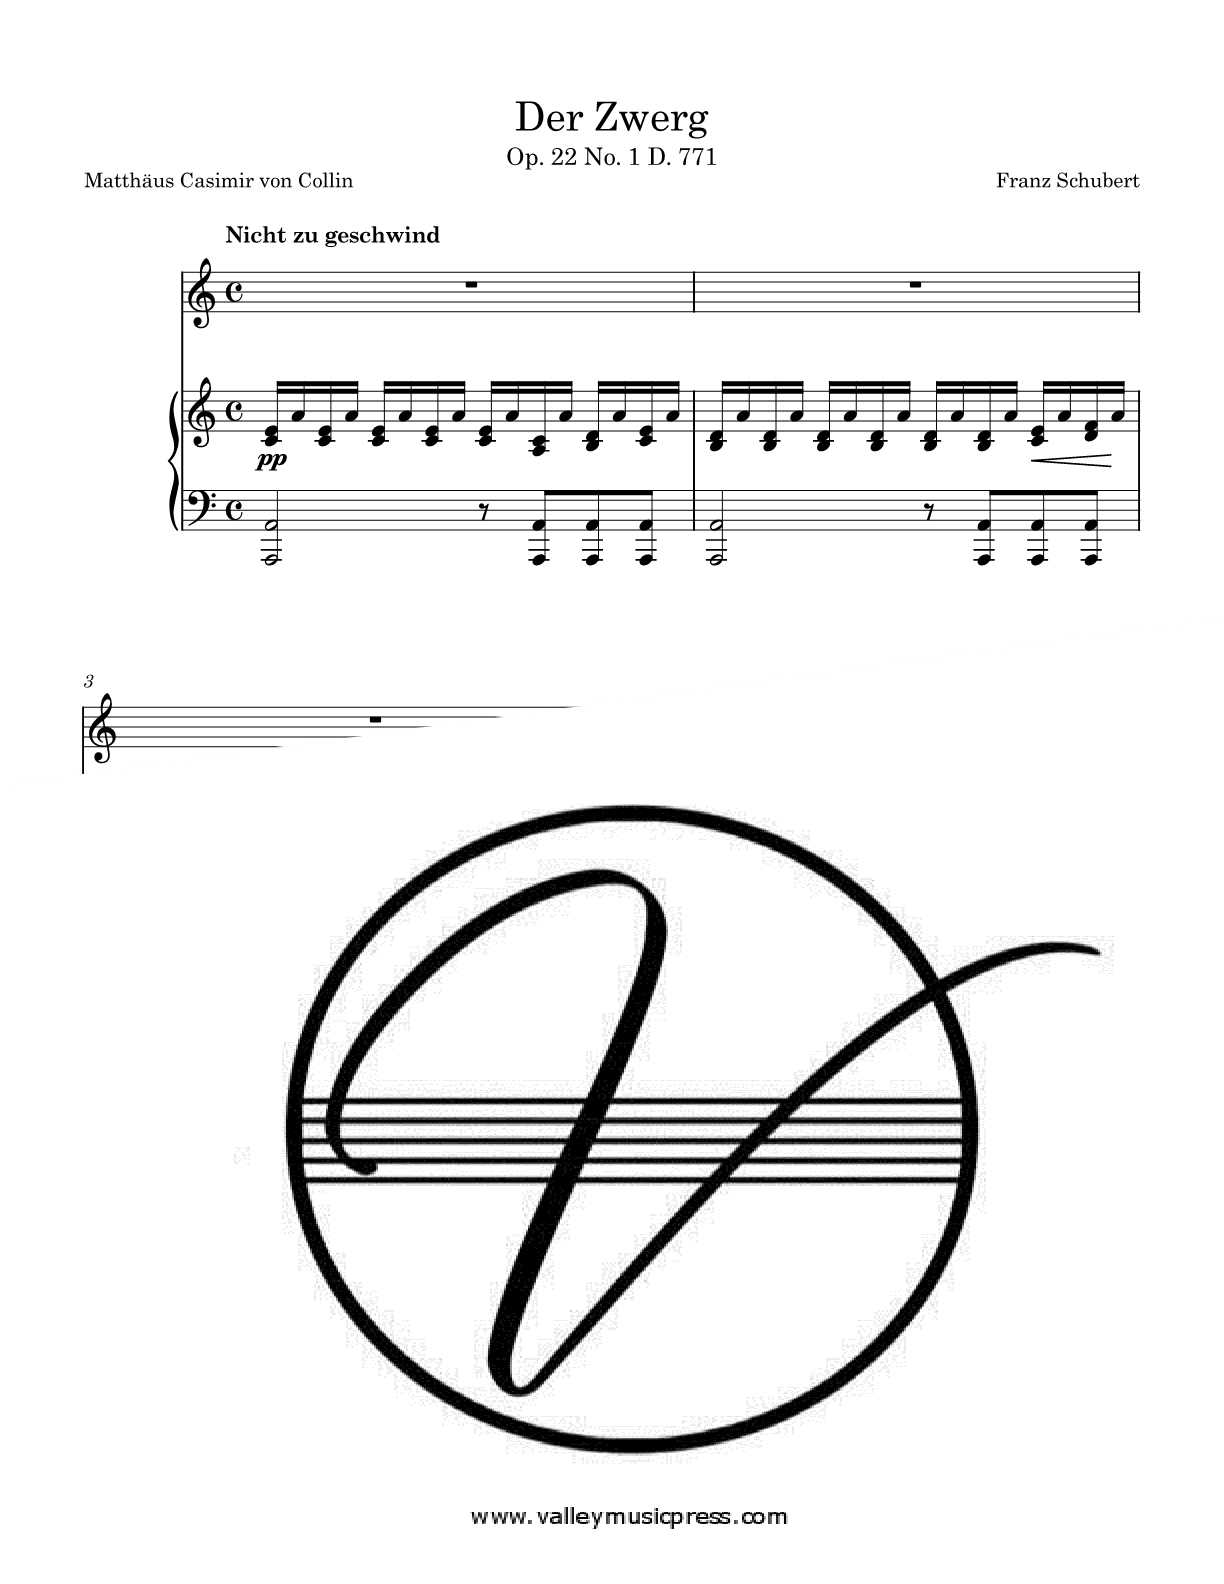 Schubert - Der Zwerg D. 771 Op. 22 No. 1 (Voice) - Click Image to Close